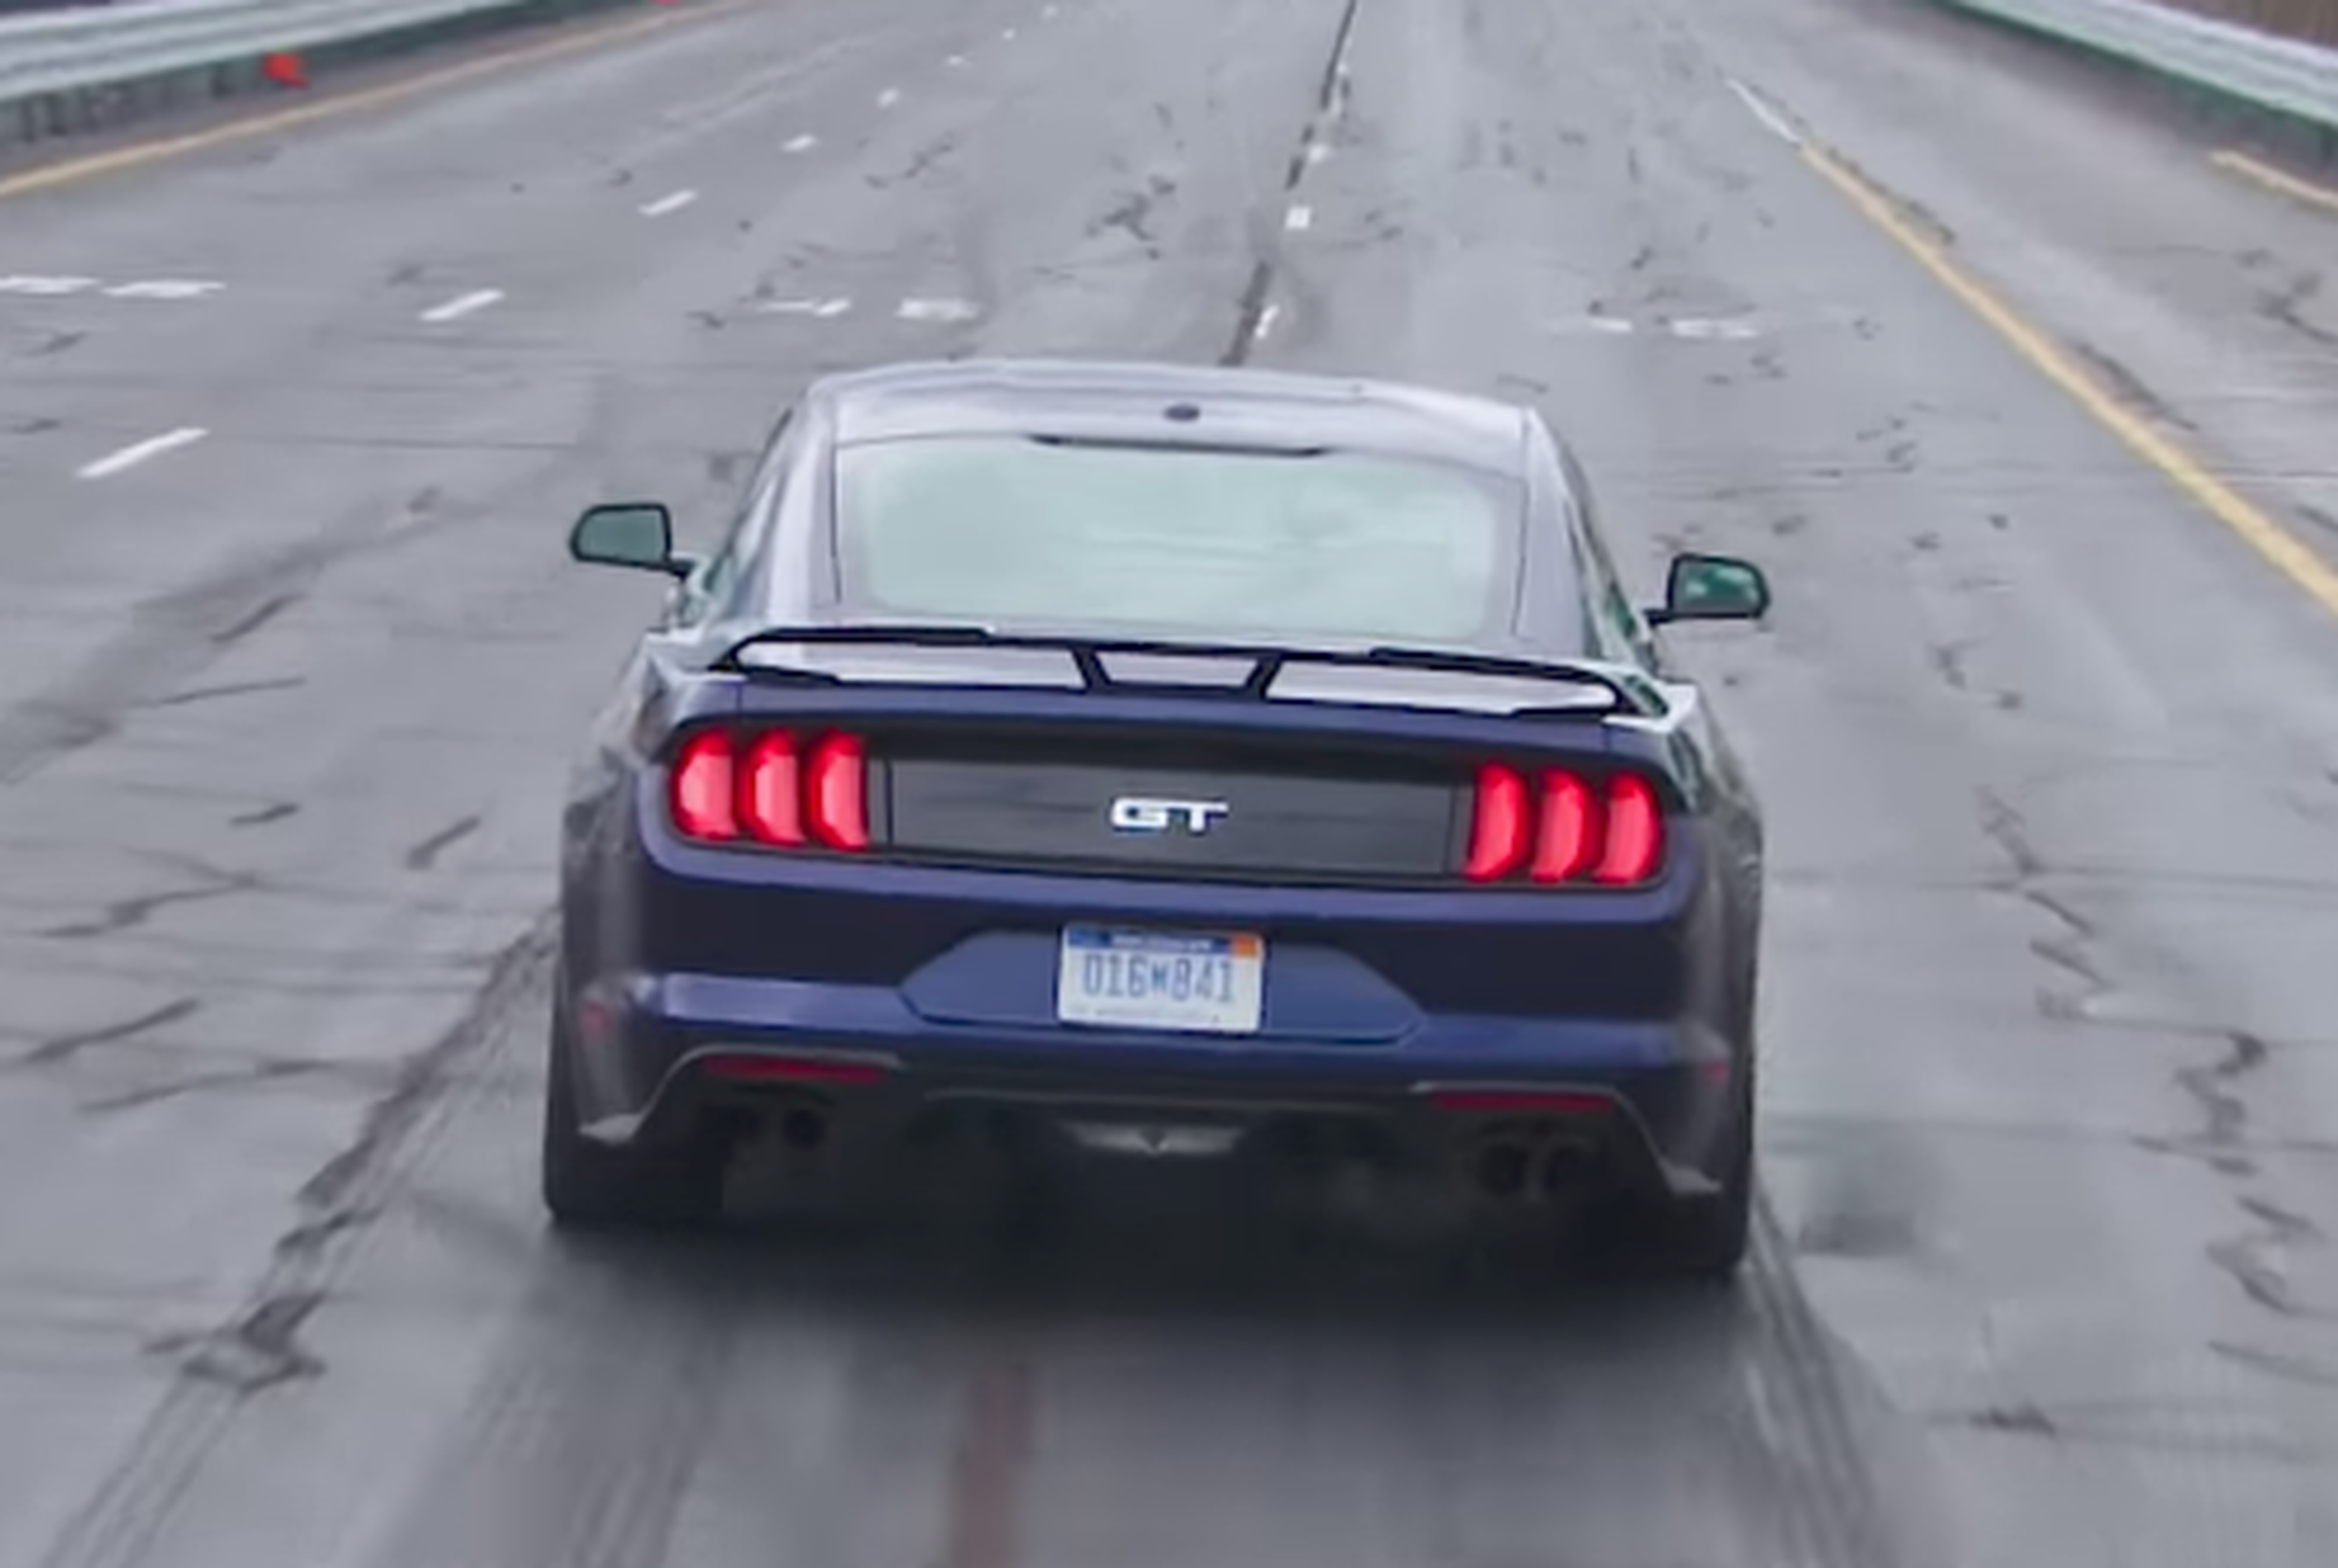 VÍDEO: ¿Qué puedes hacer mientras acelera un Ford Mustang? [TG]